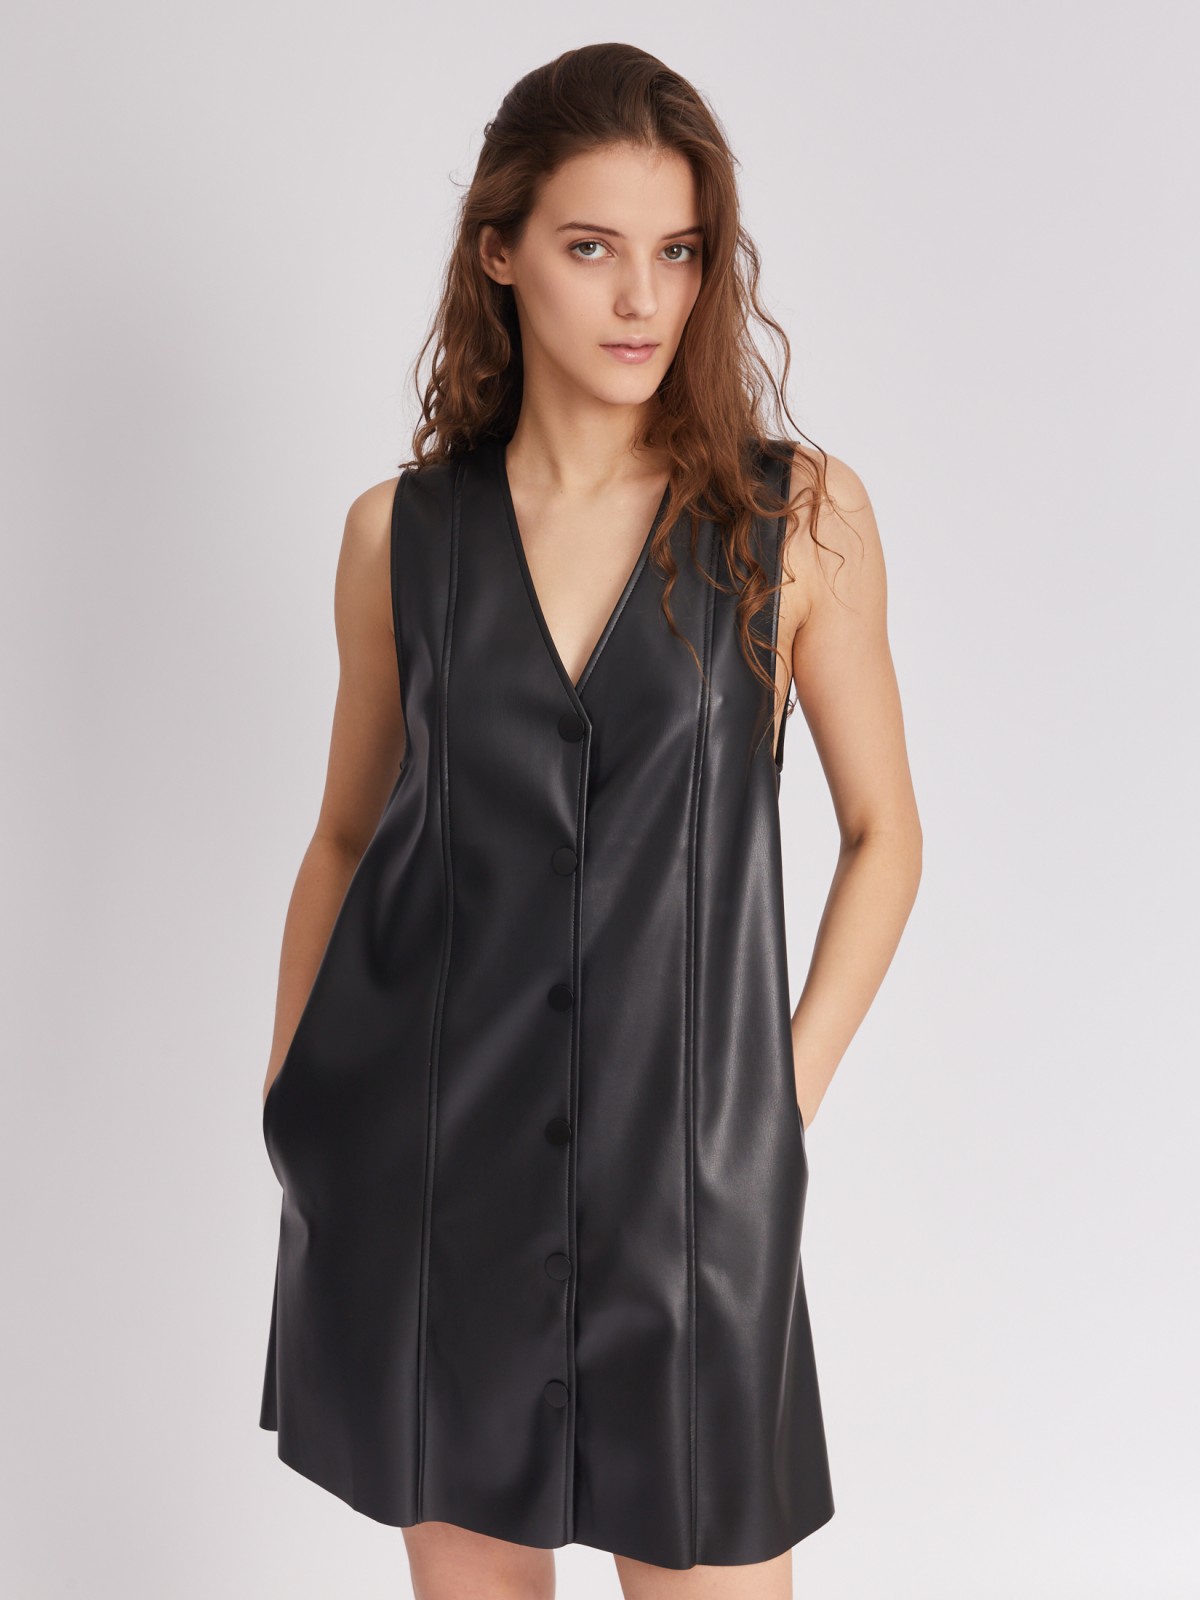 Платье-сарафан длины мини без рукавов из экокожи на кнопках zolla 223338259051, цвет черный, размер XS - фото 1